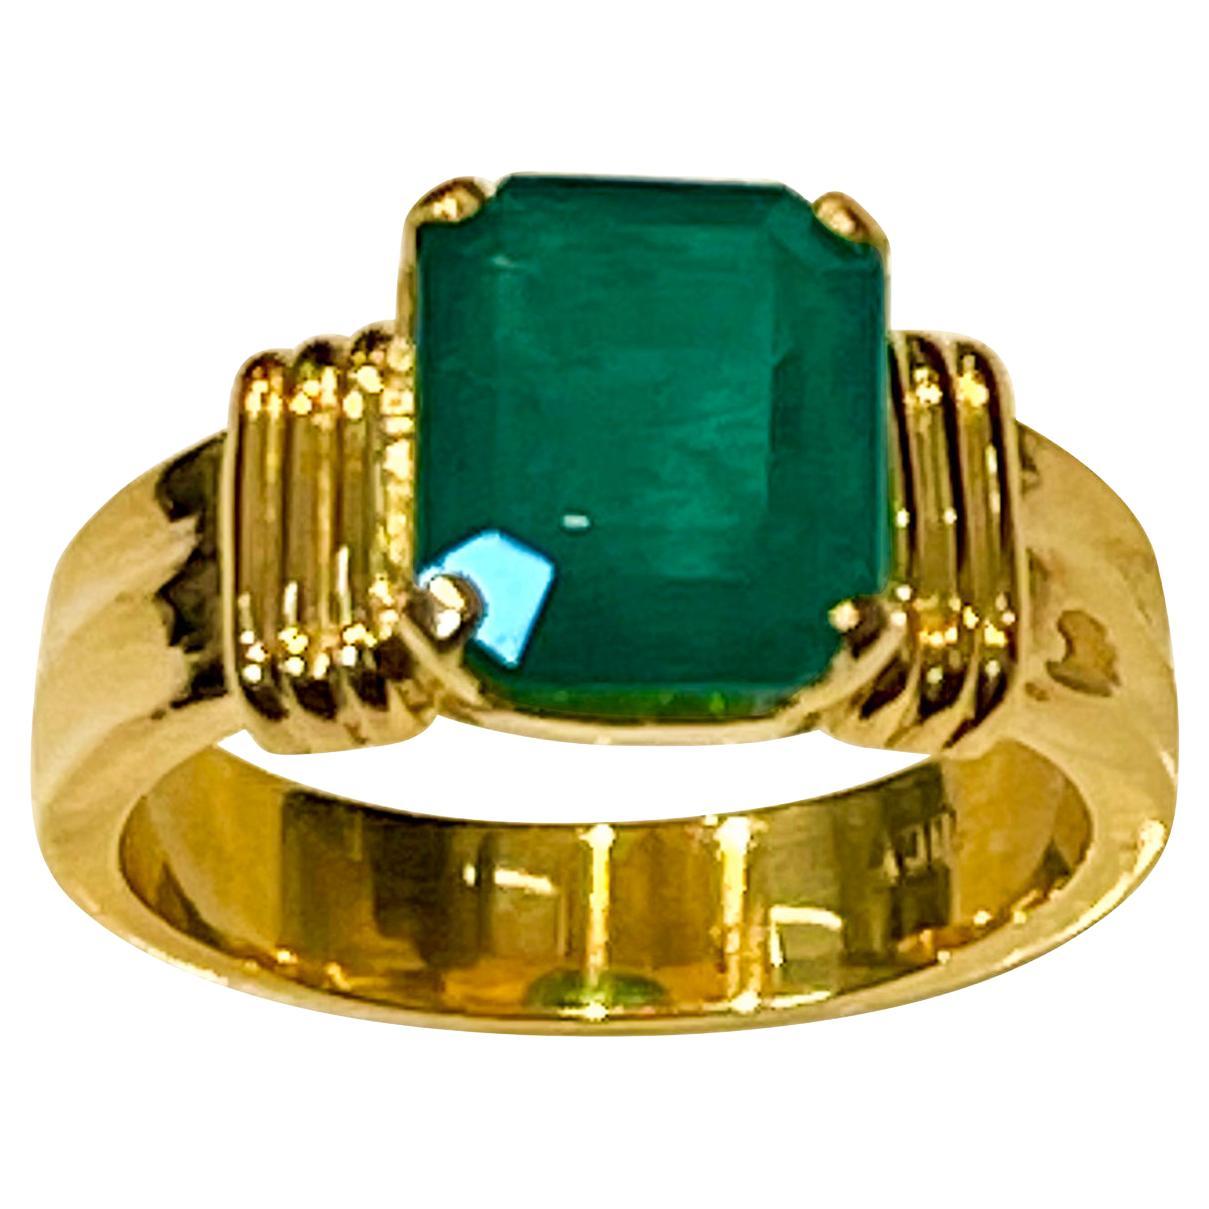 3.5 Carat Natural Emerald Cut Emerald Ring 18 Karat Yellow Gold